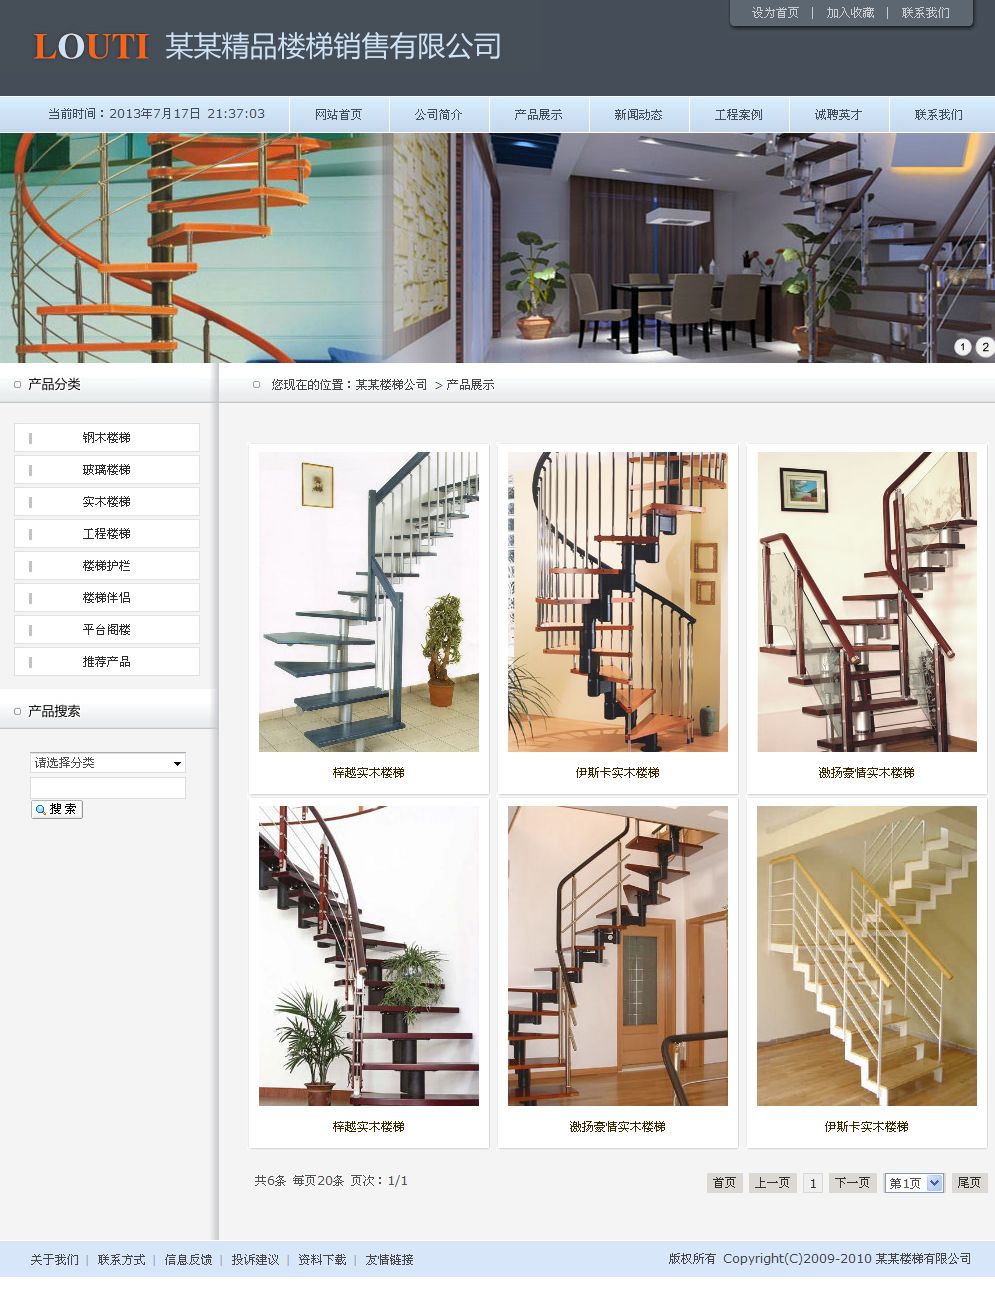 楼梯制造公司网站产品列表页